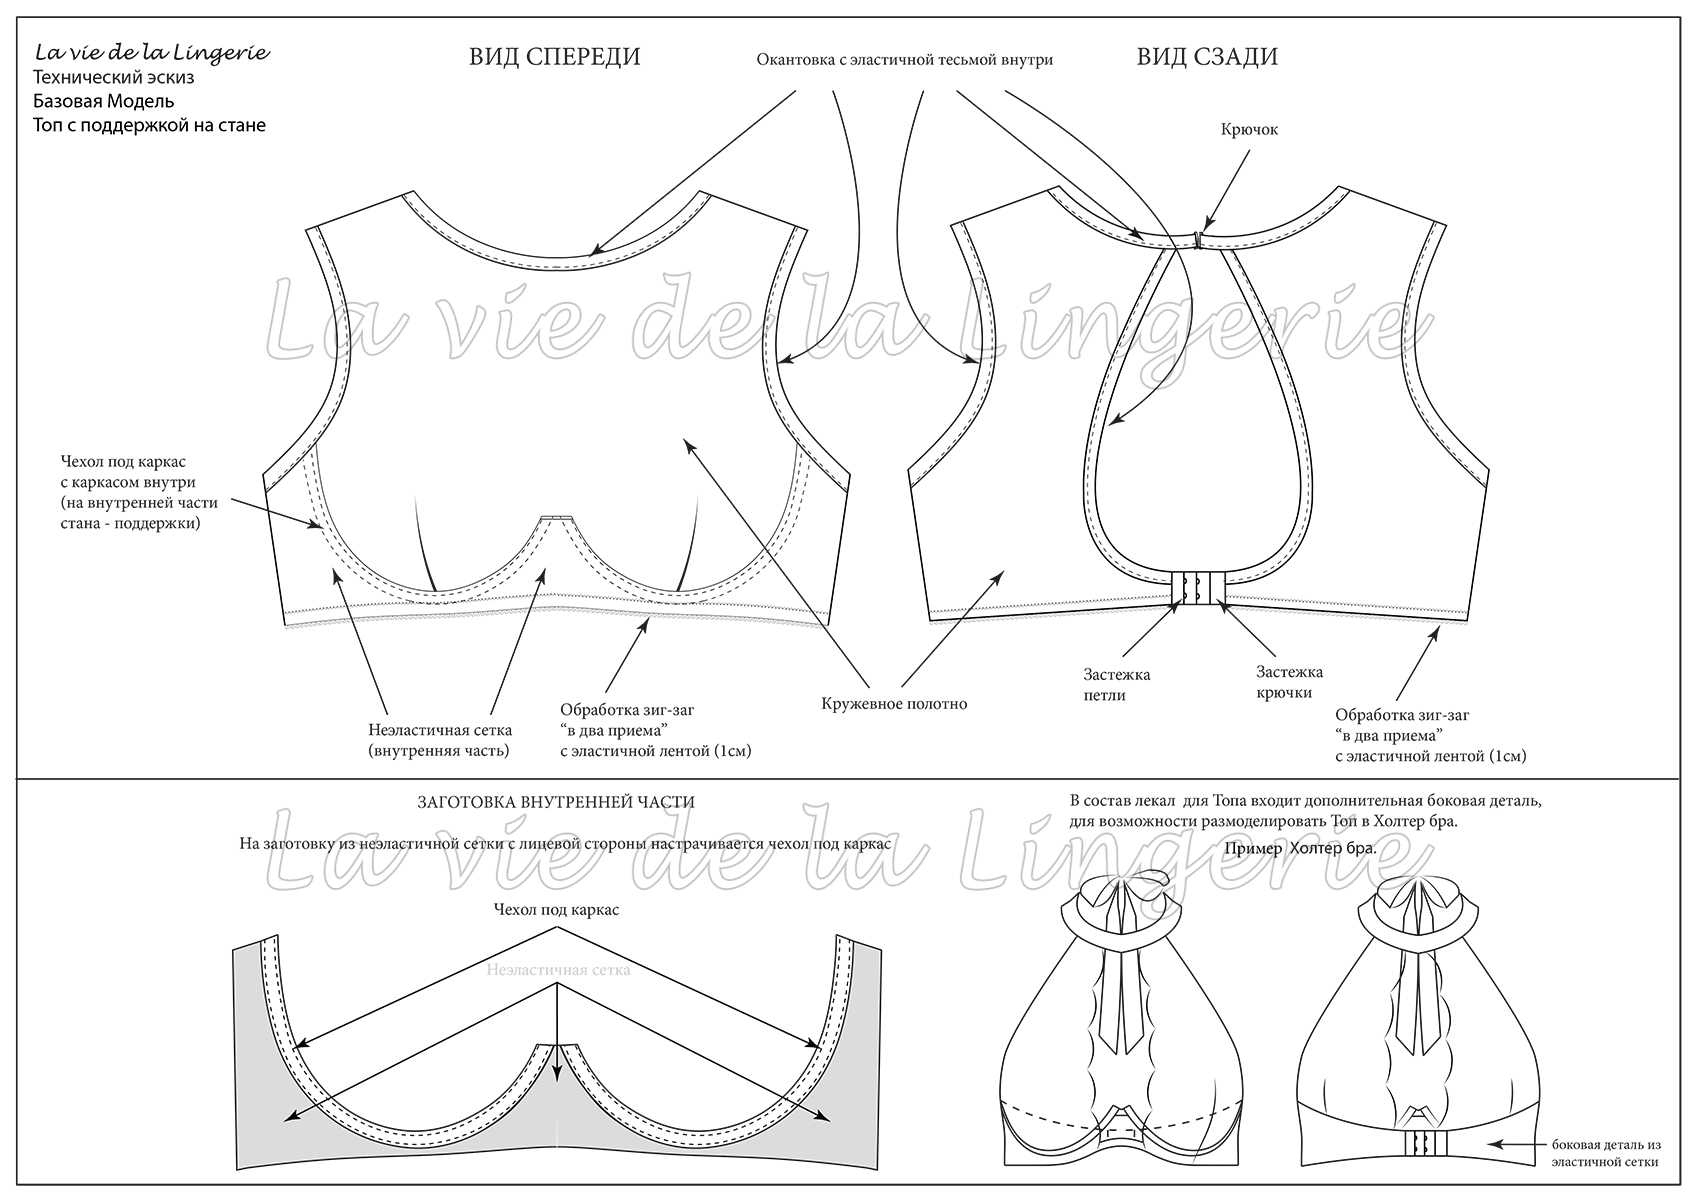 Инструменты и материалы для пошива нижнего белья